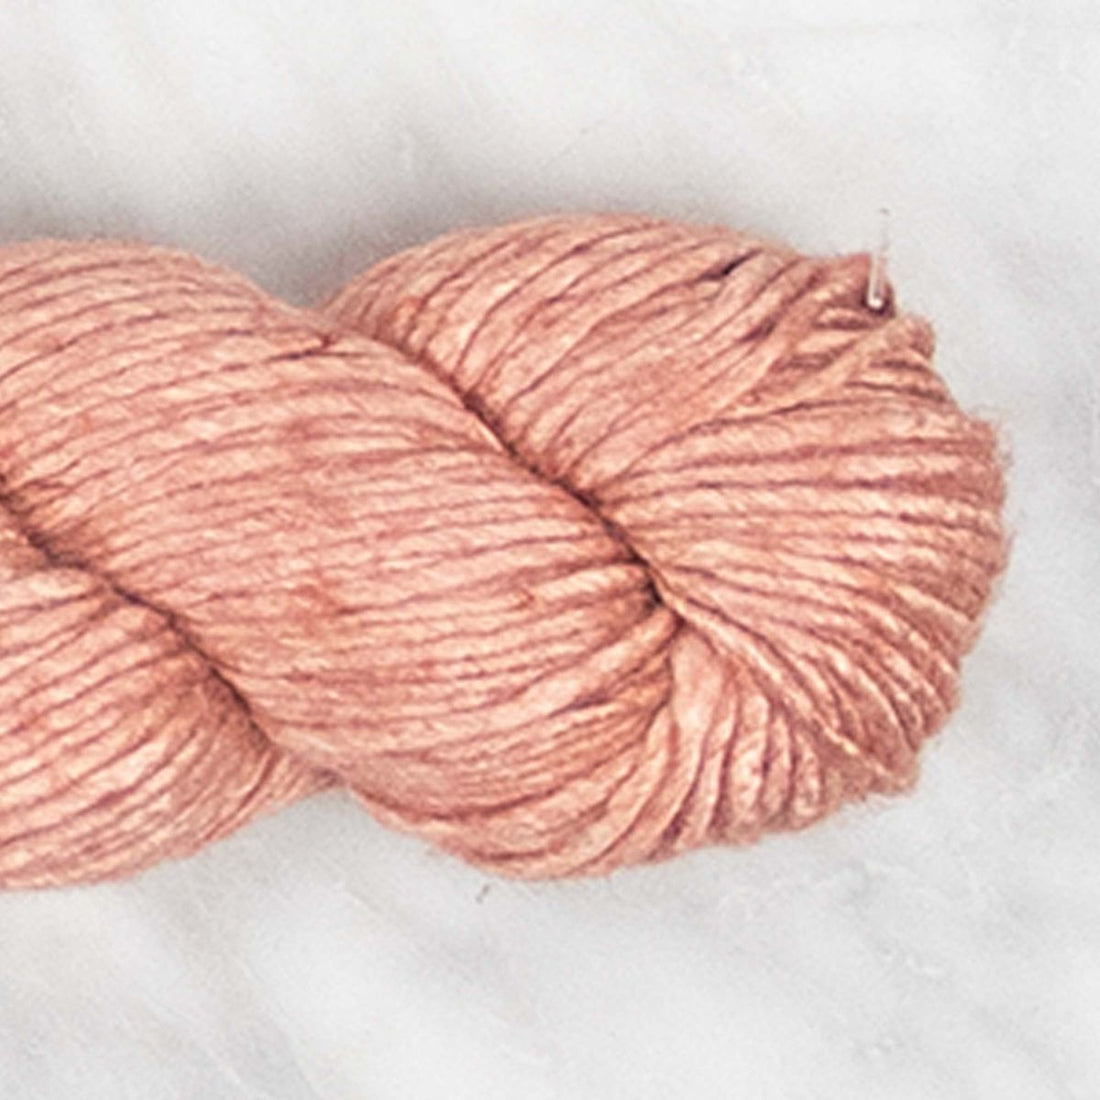 Viscose Yarn - Muted Clay - 100 grams